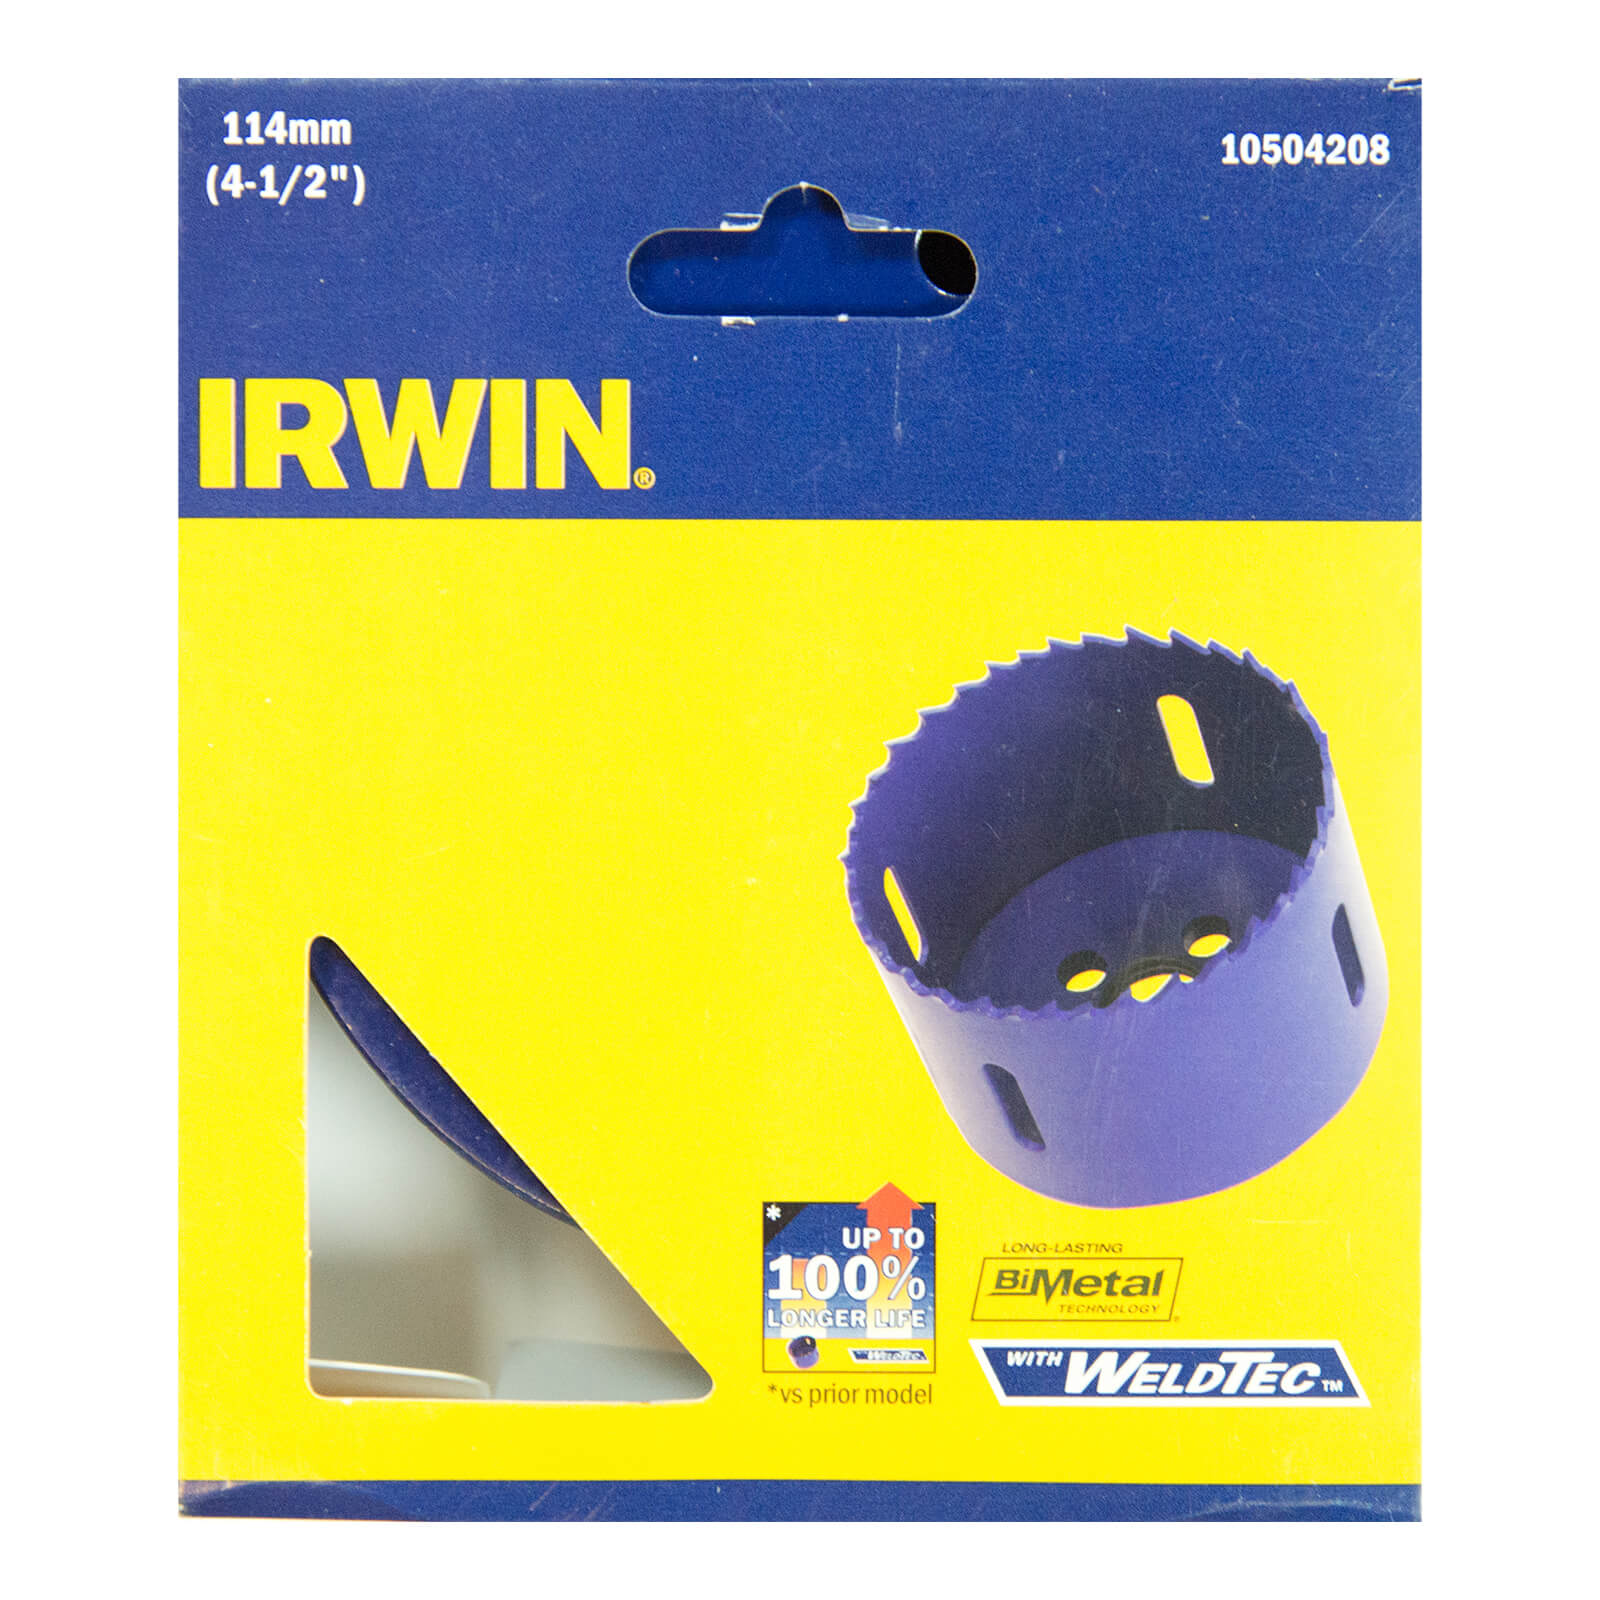 IRWIN Bi-Metal Hole Saw - 114mm